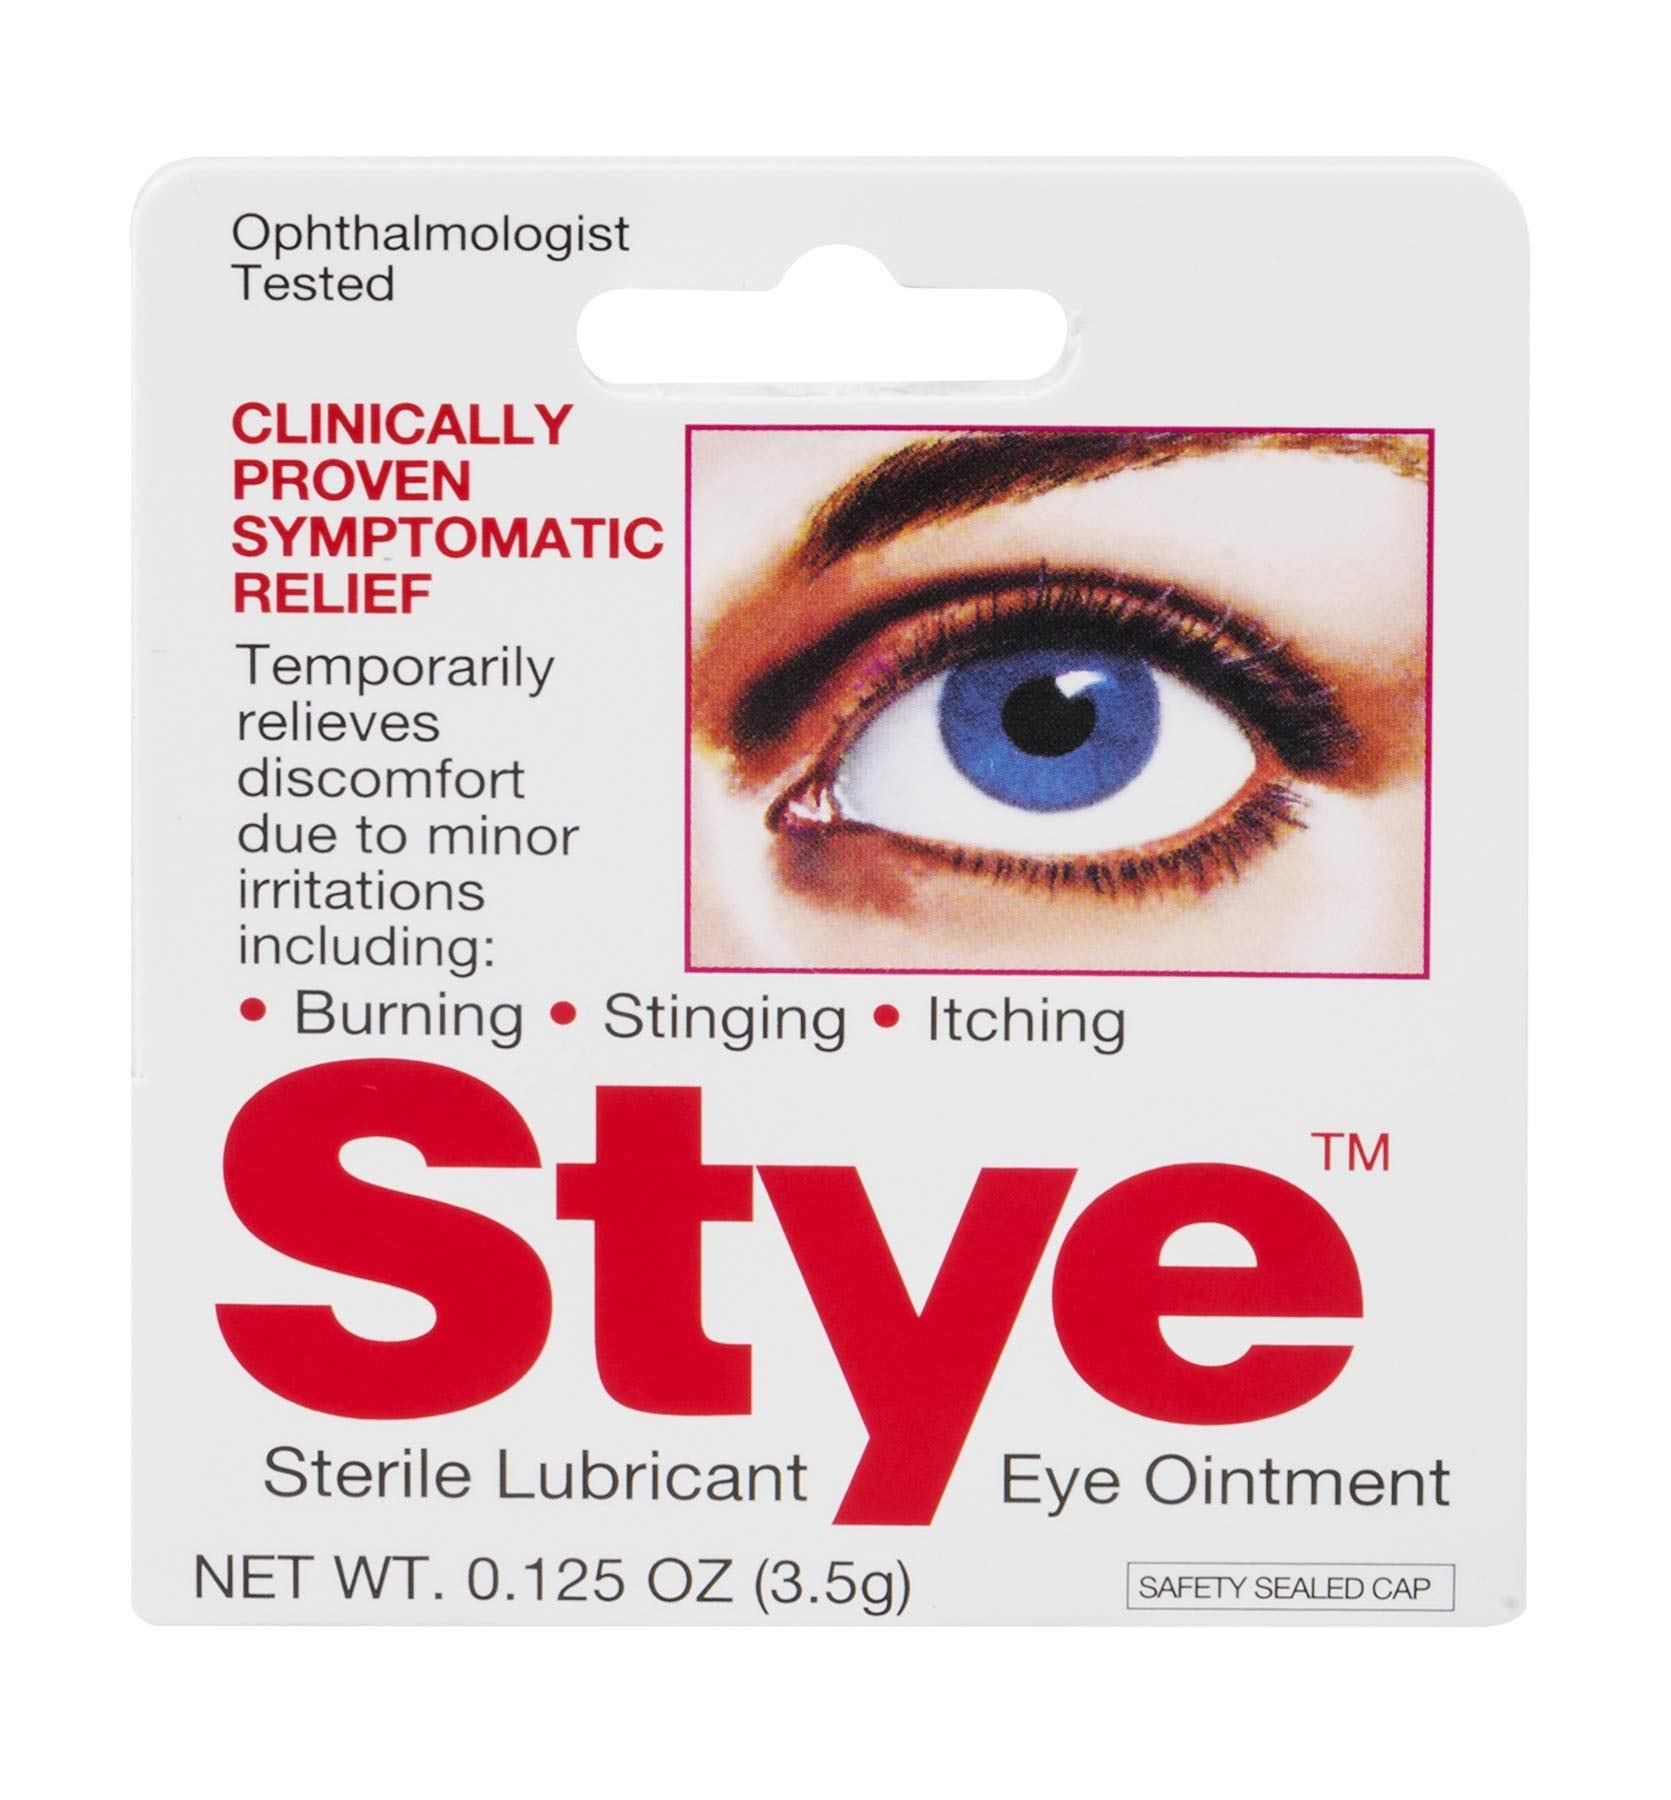 Stye Sterile Lubricant Eye Ointment 0.125 oz